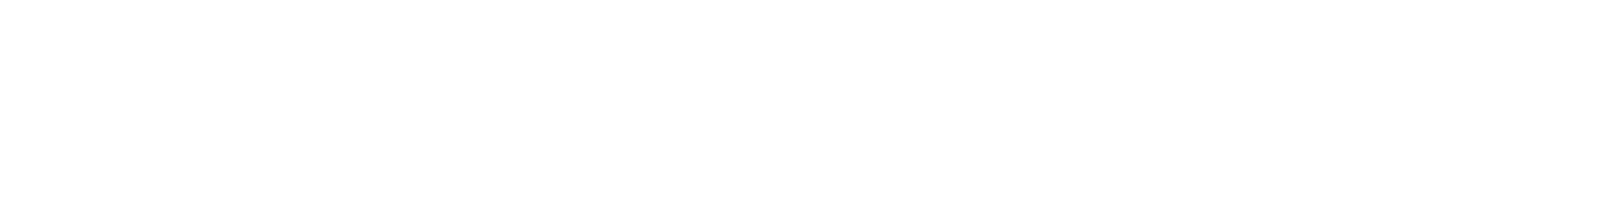 McKesson logo large for dark backgrounds (transparent PNG)